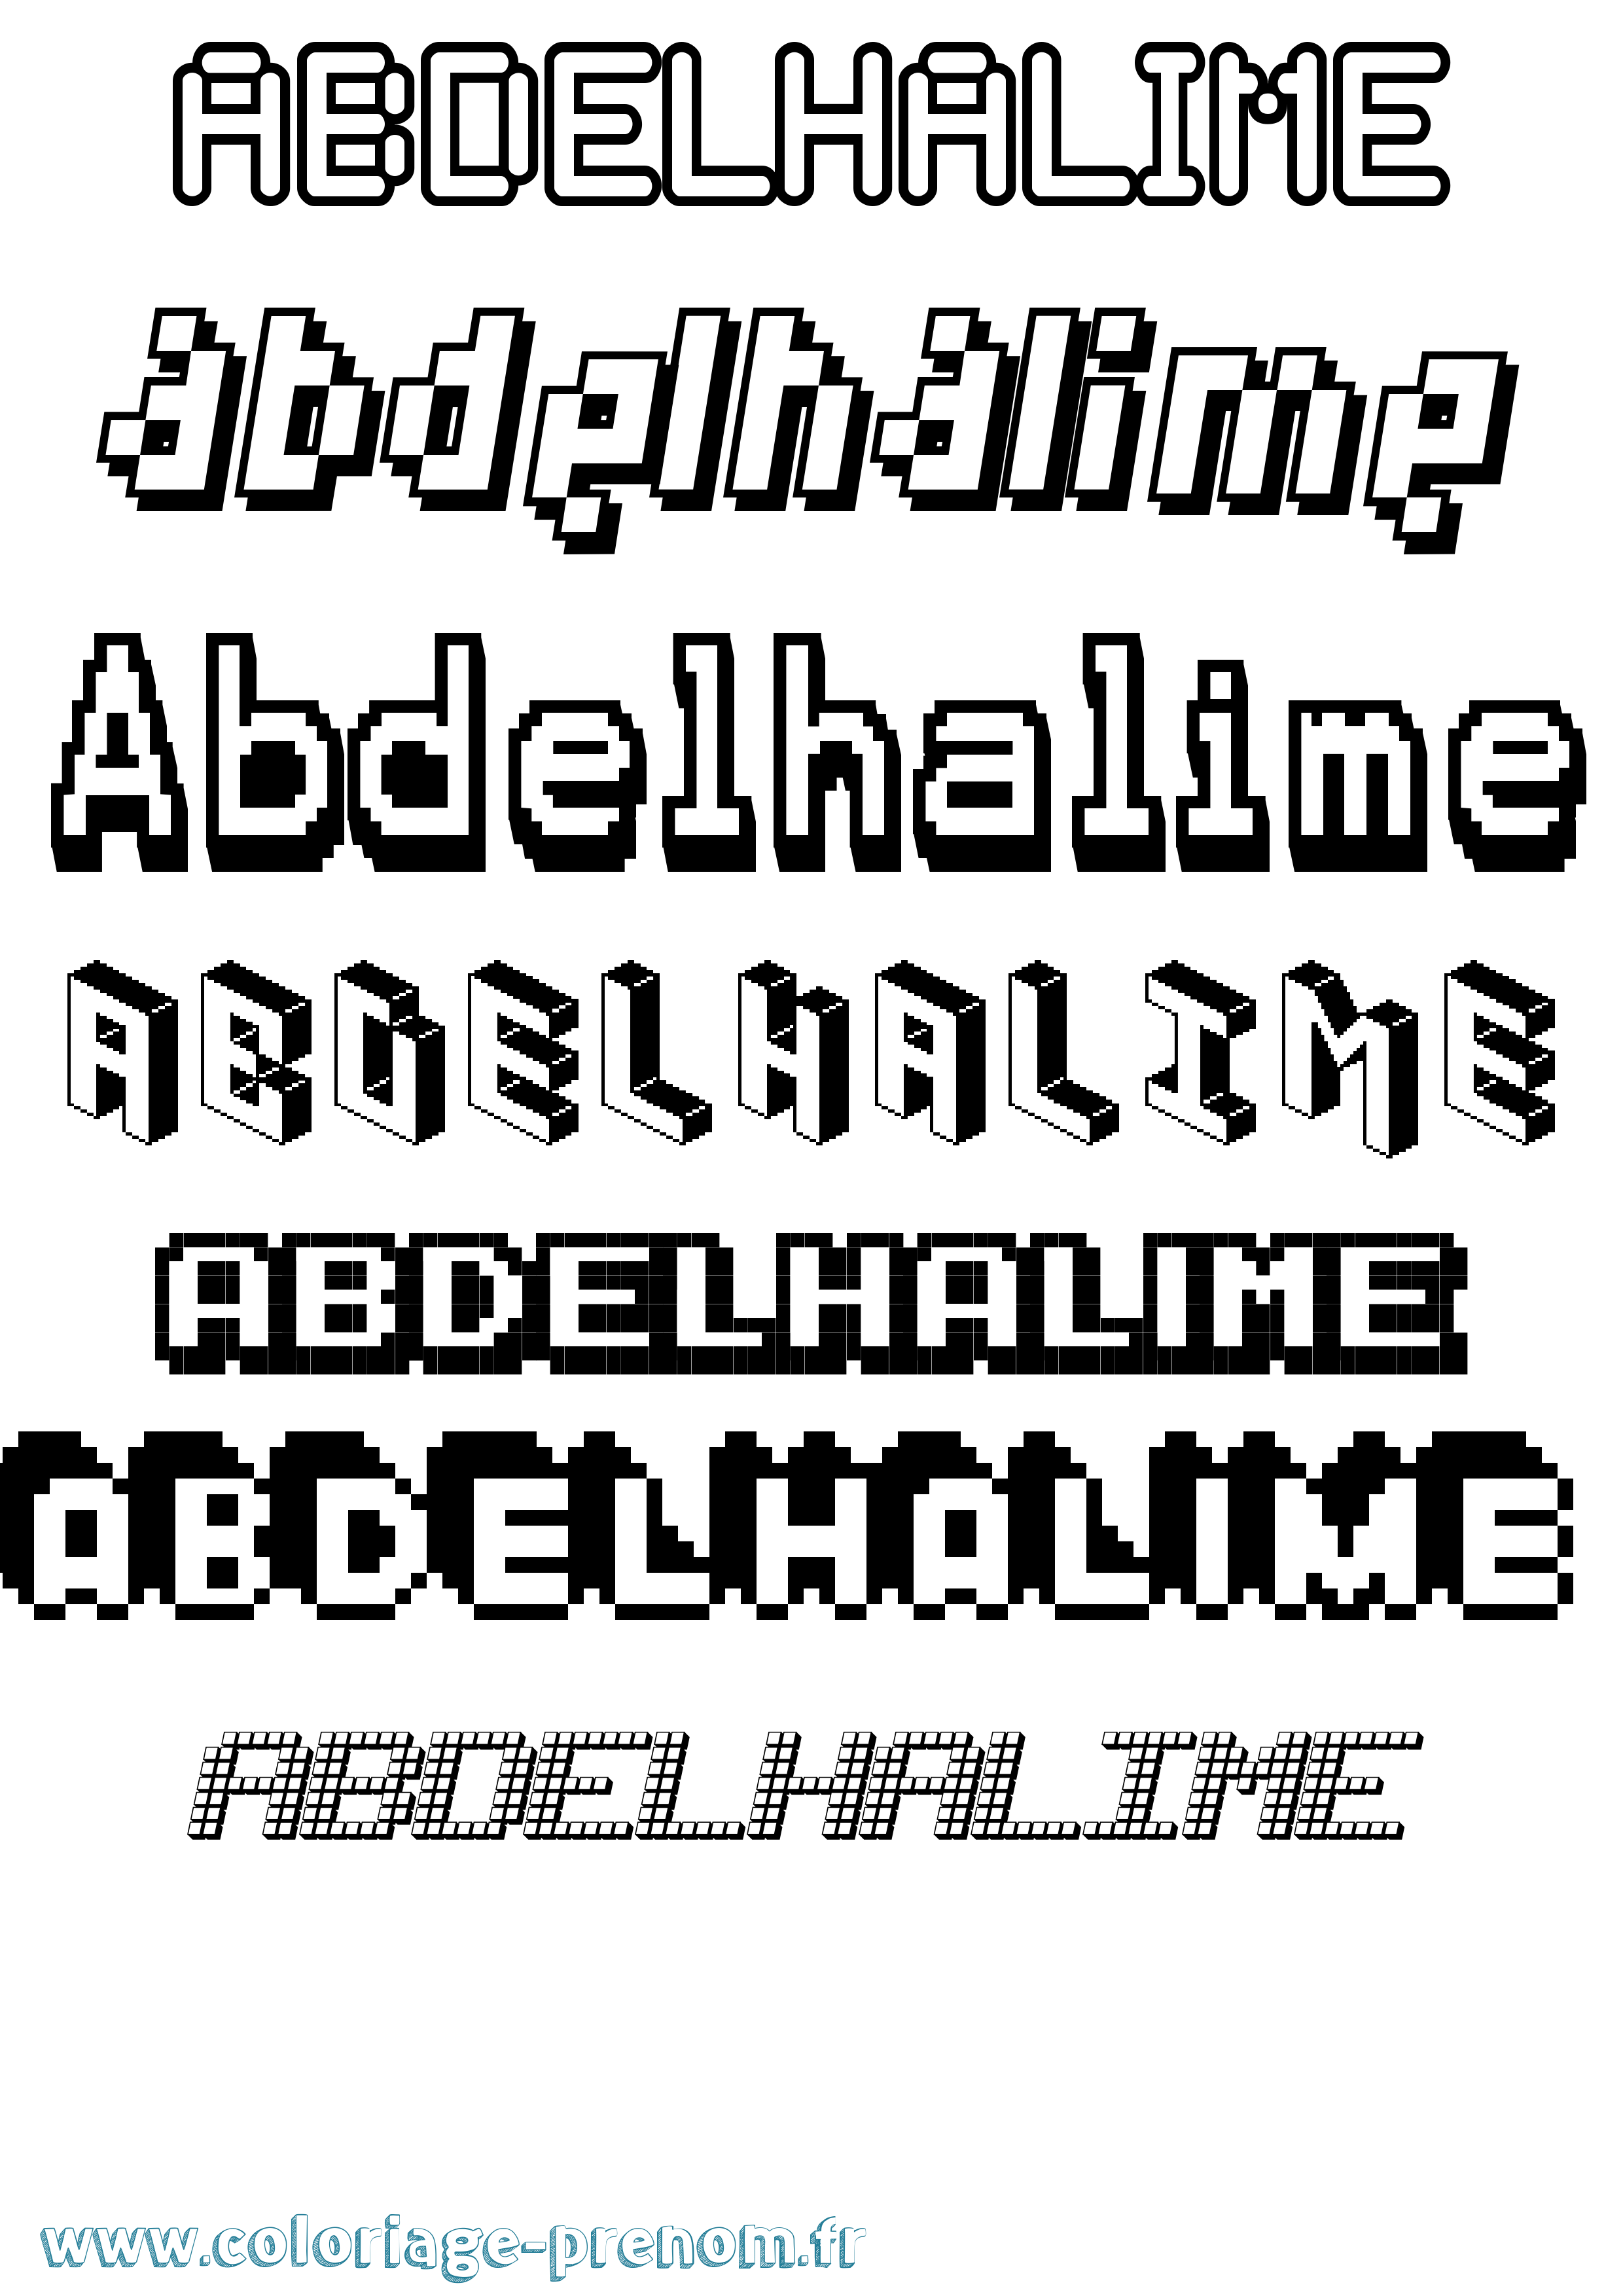 Coloriage prénom Abdelhalime Pixel